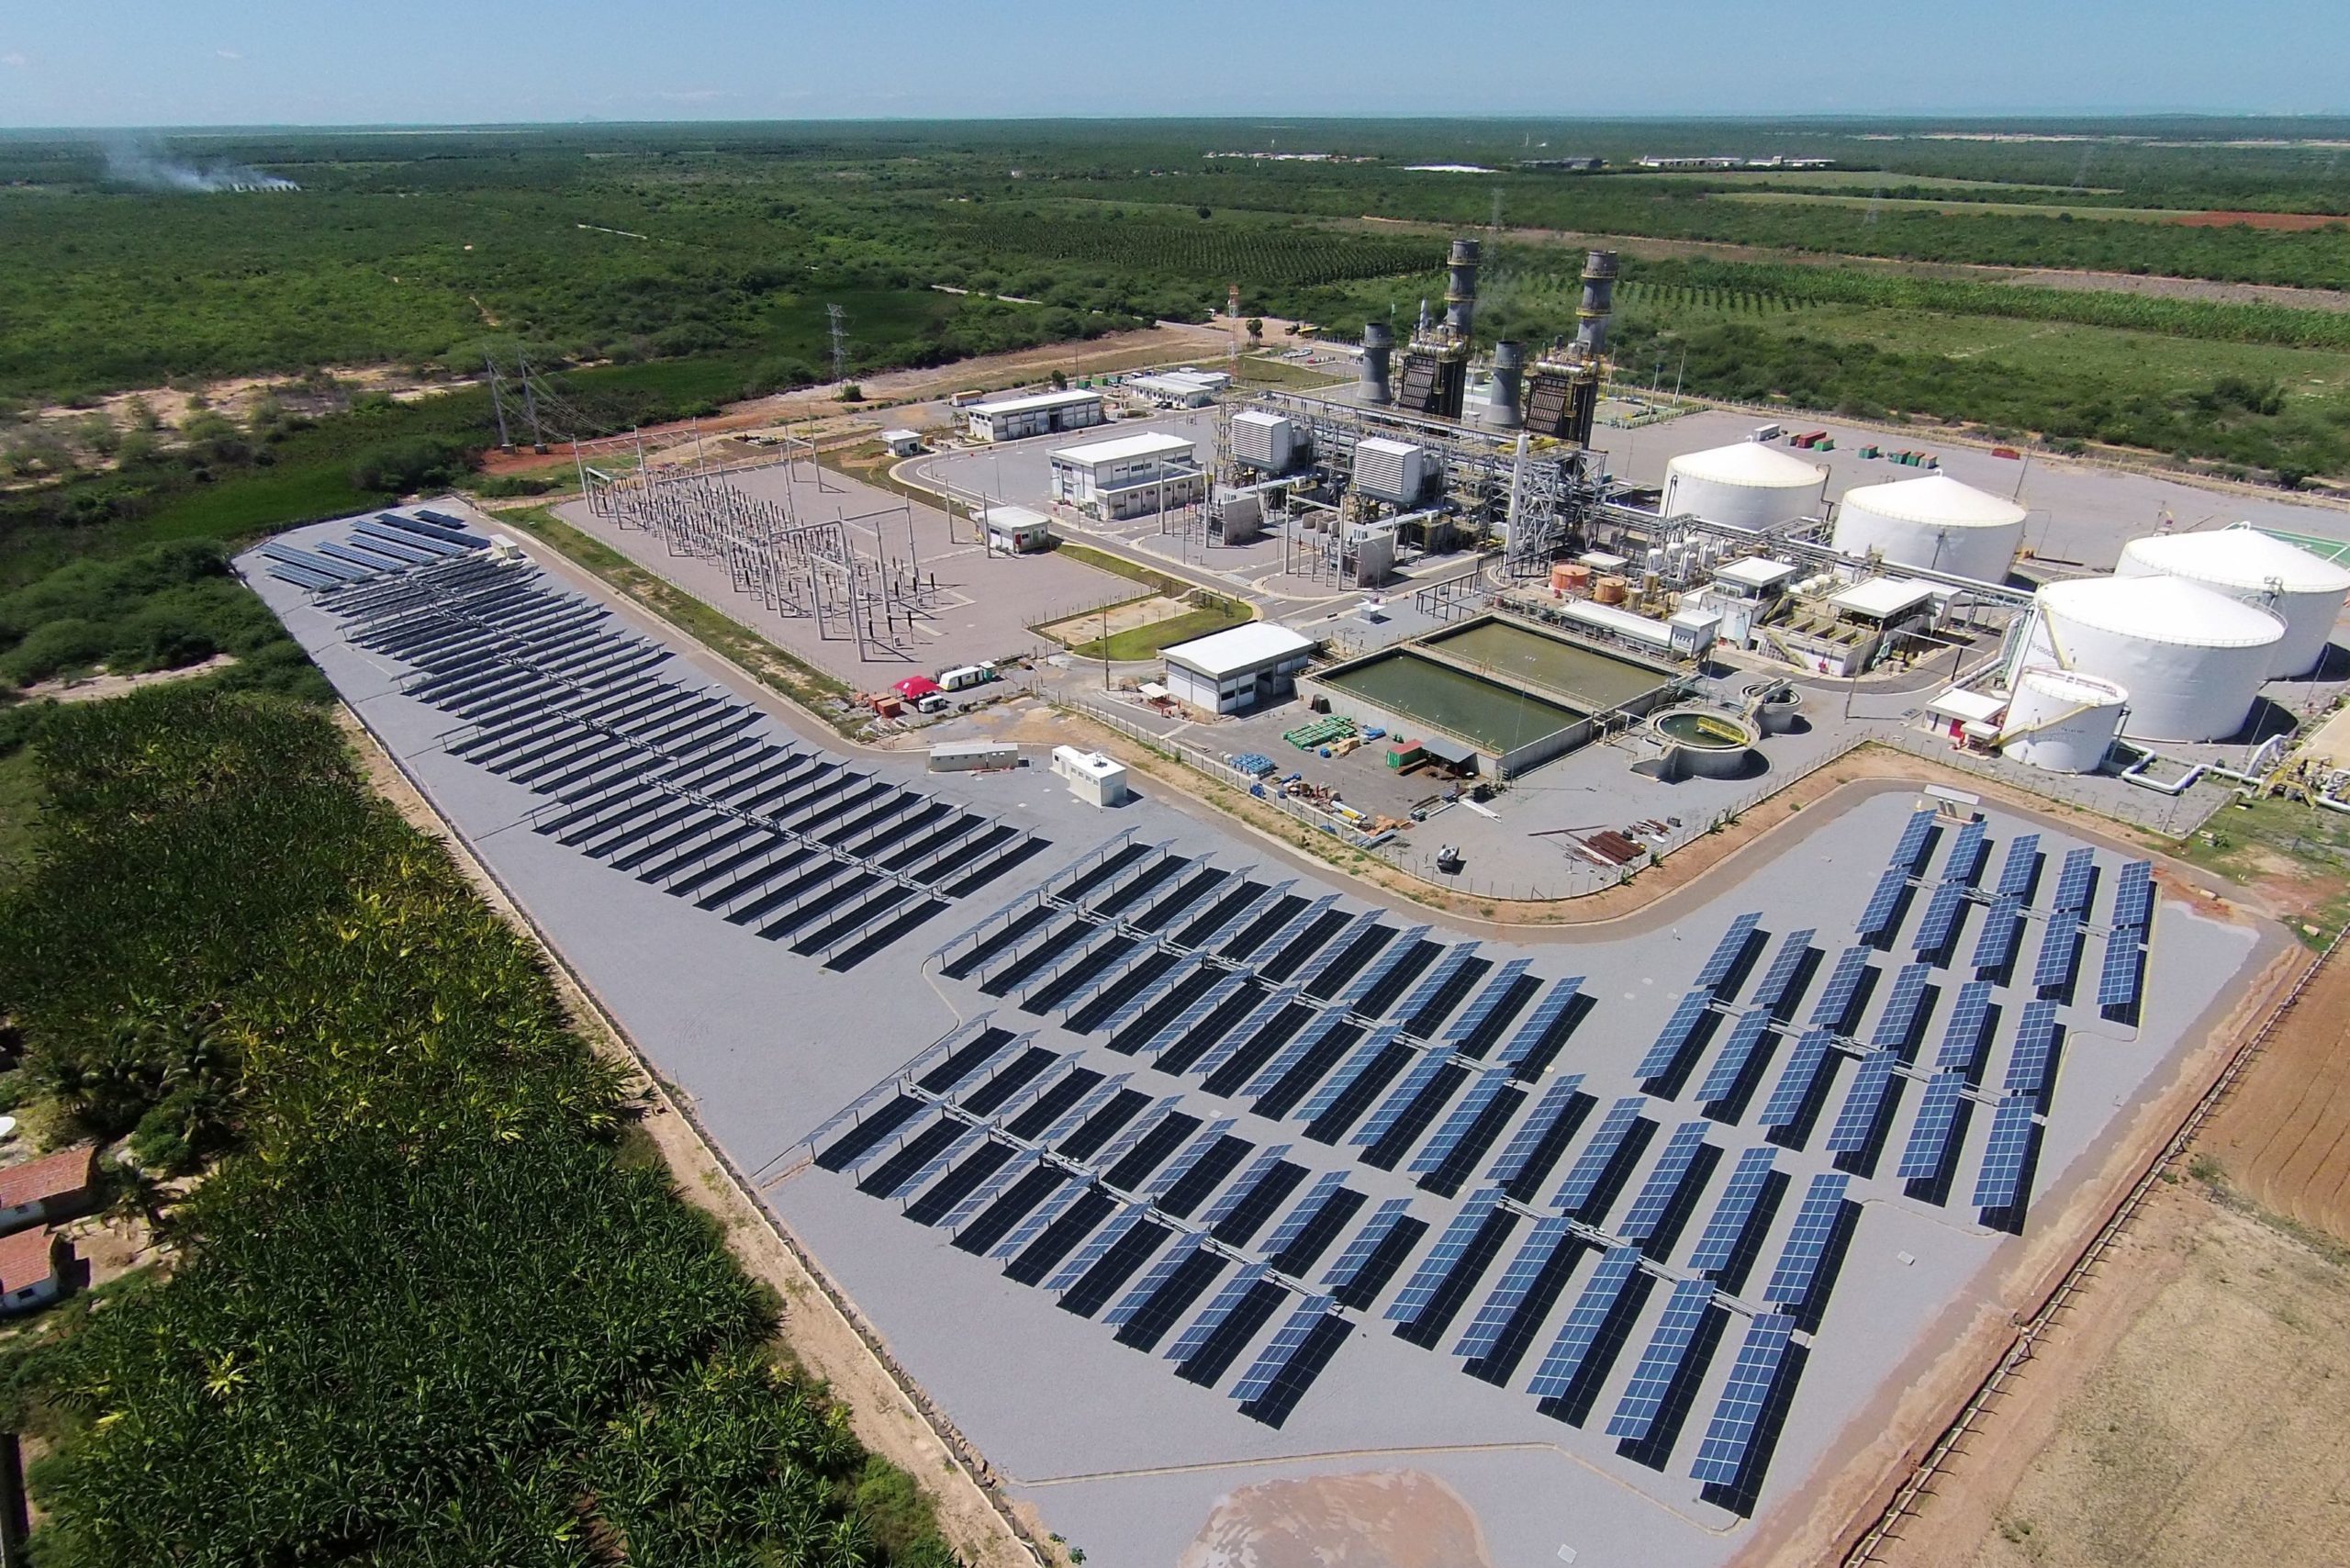 Petrobras aporta R$ 90 milhões para implantação de planta piloto de eletrólise, em parceria com o Senai, na usina fotovoltaica de Alto Rodrigues, no RN (Foto: Luiz Fernando Almeida Fontenele/Agência Petrobras)